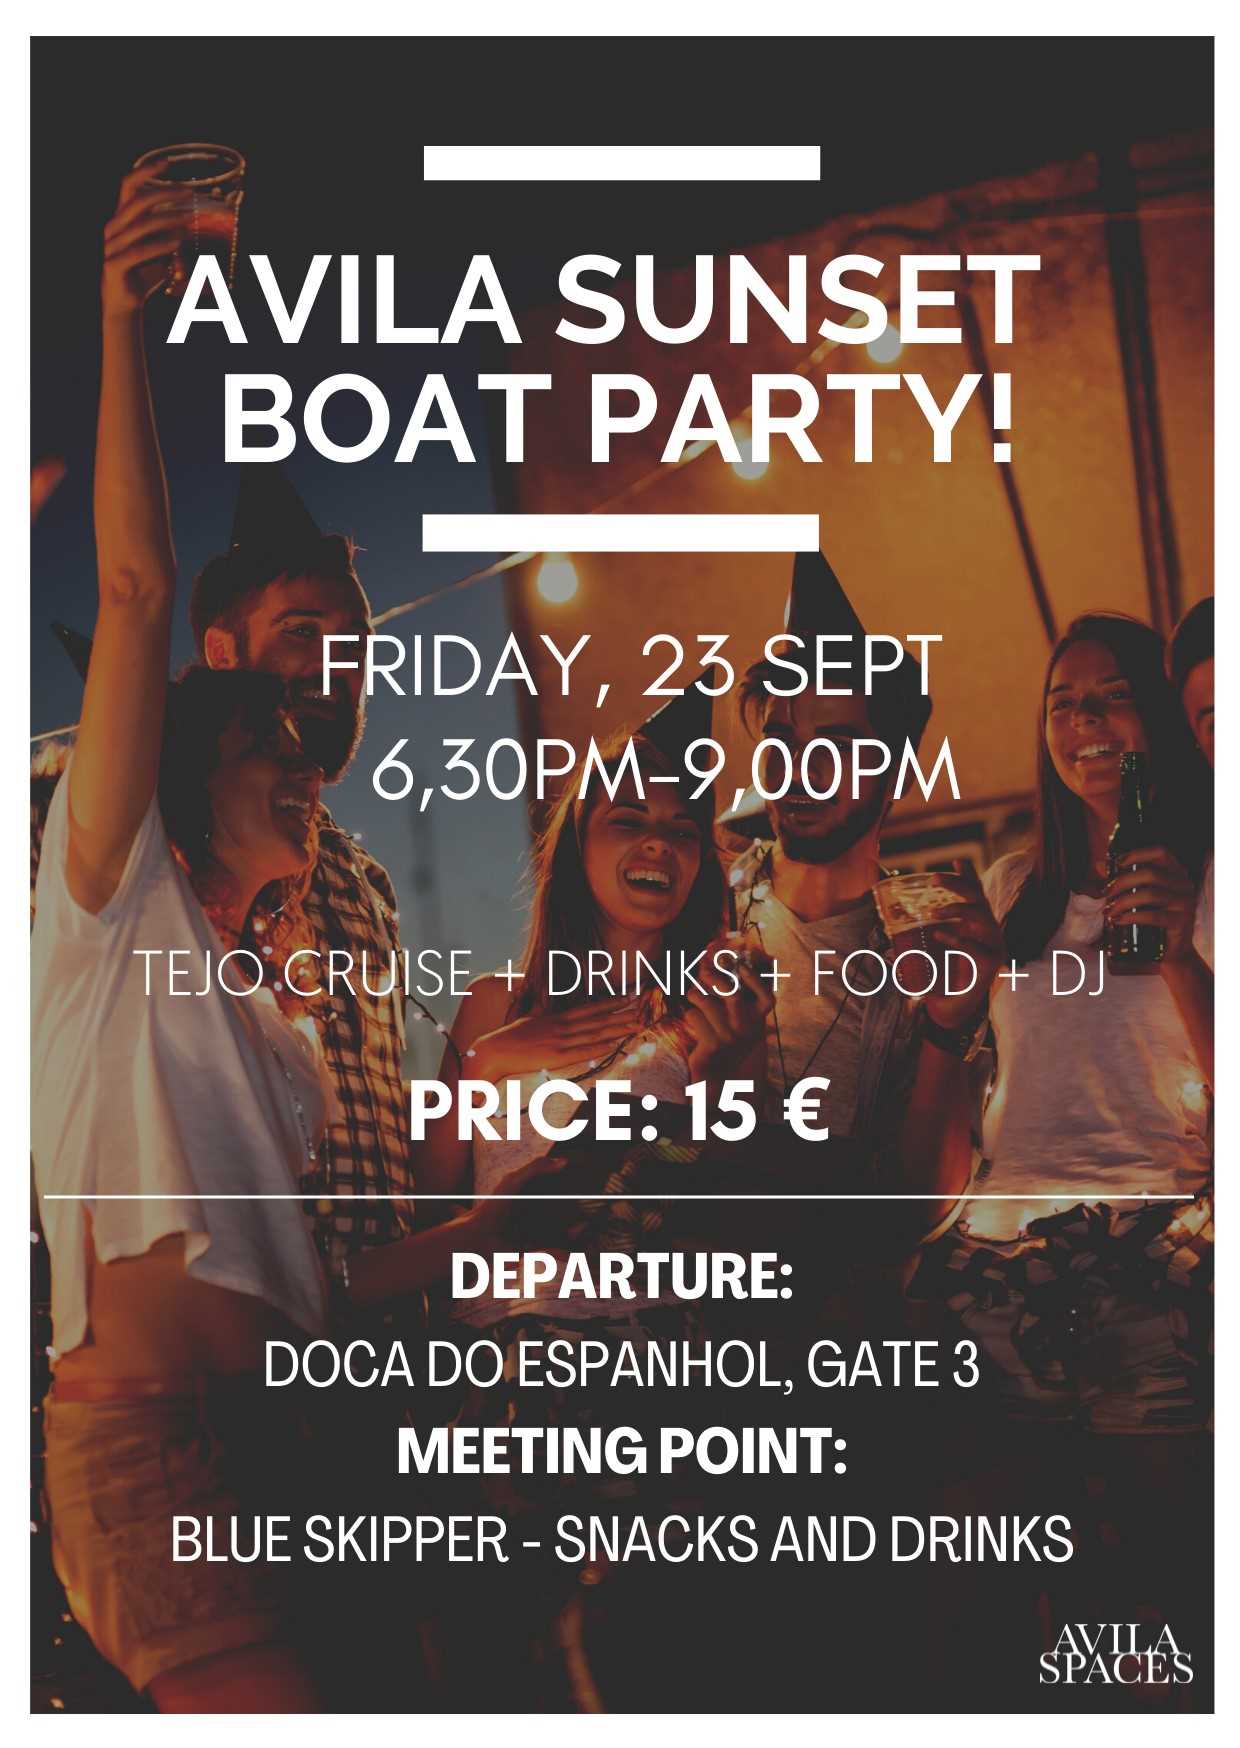 Avila Sunset Boat Party!